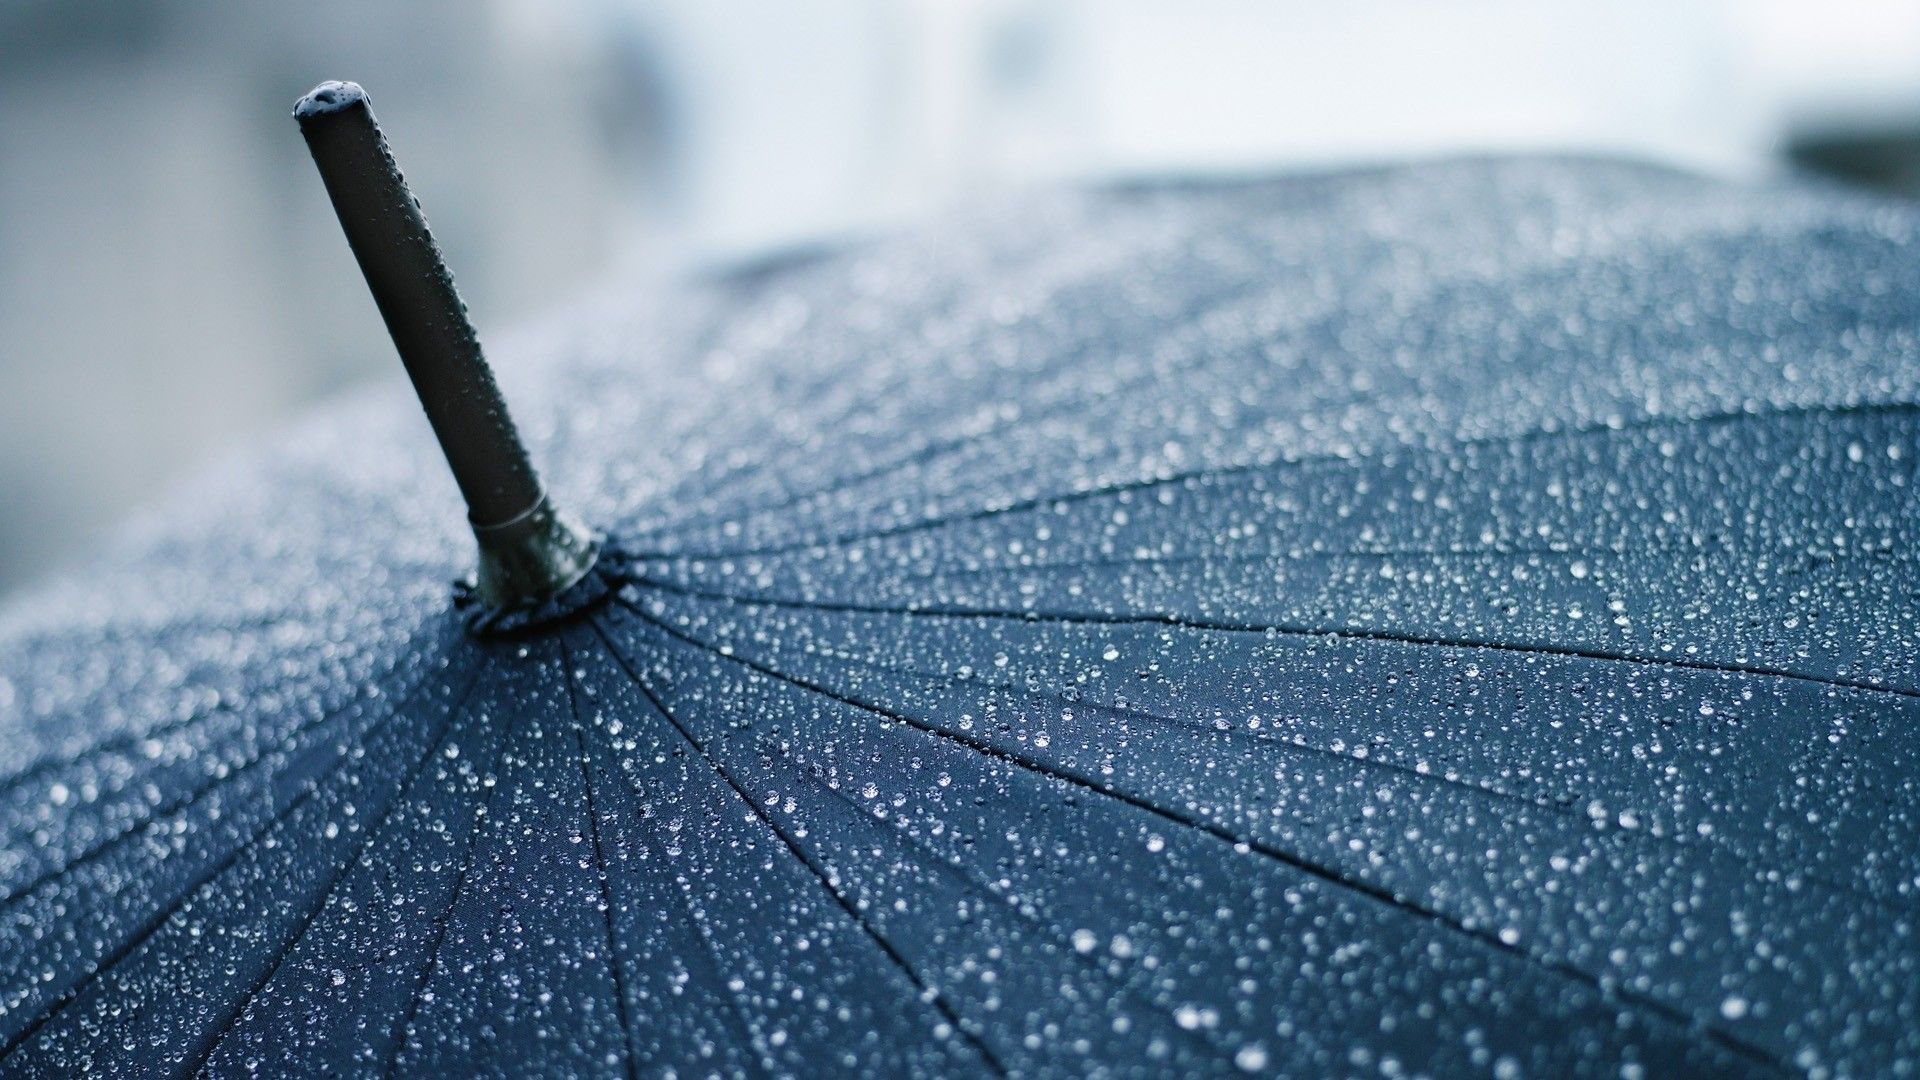 تصویر جالب قطرات باران روی چتر مشکی برای پروفایل